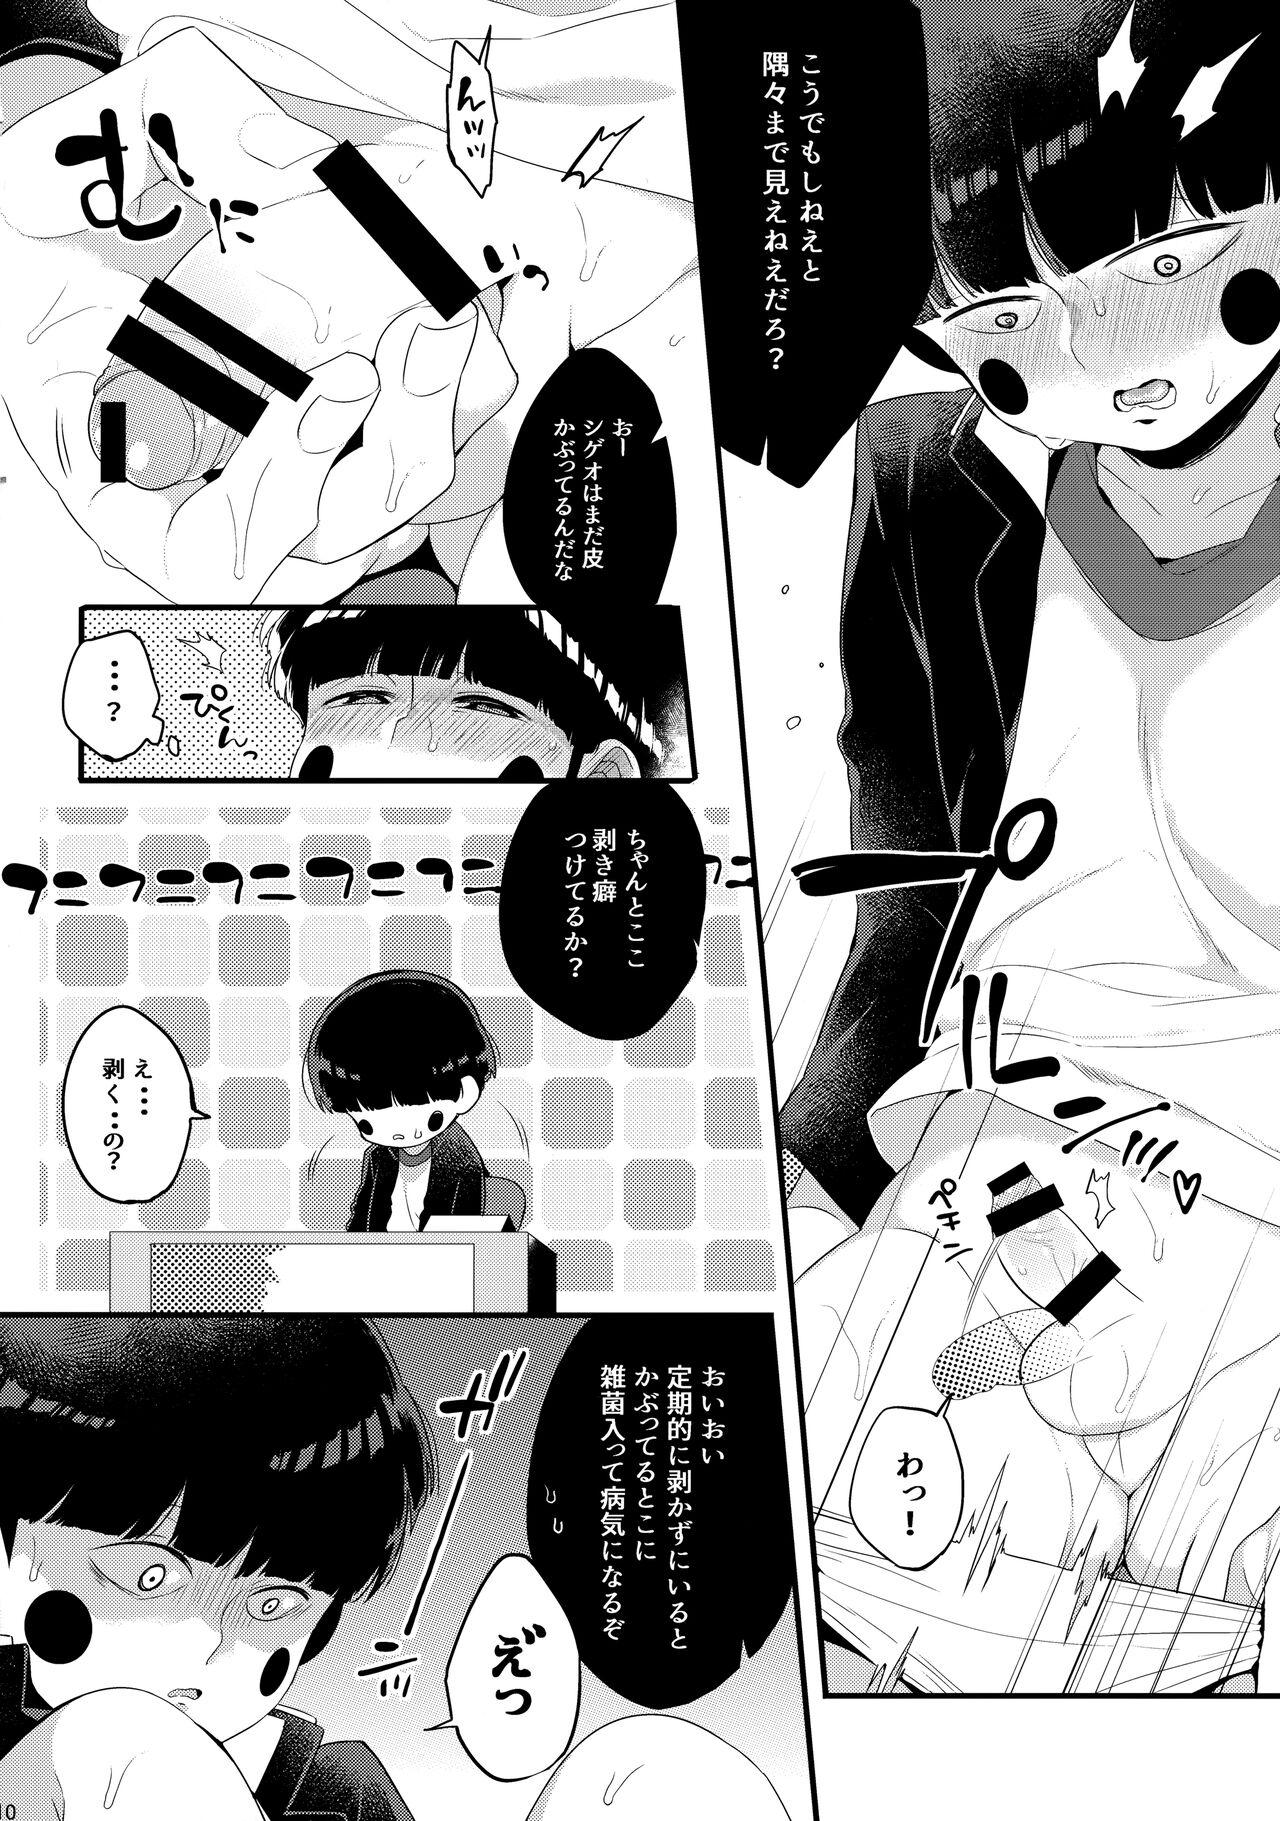 Solo Female Boku ni wa, Sensei ga Futari Iru - Mob psycho 100 Bbw - Page 11